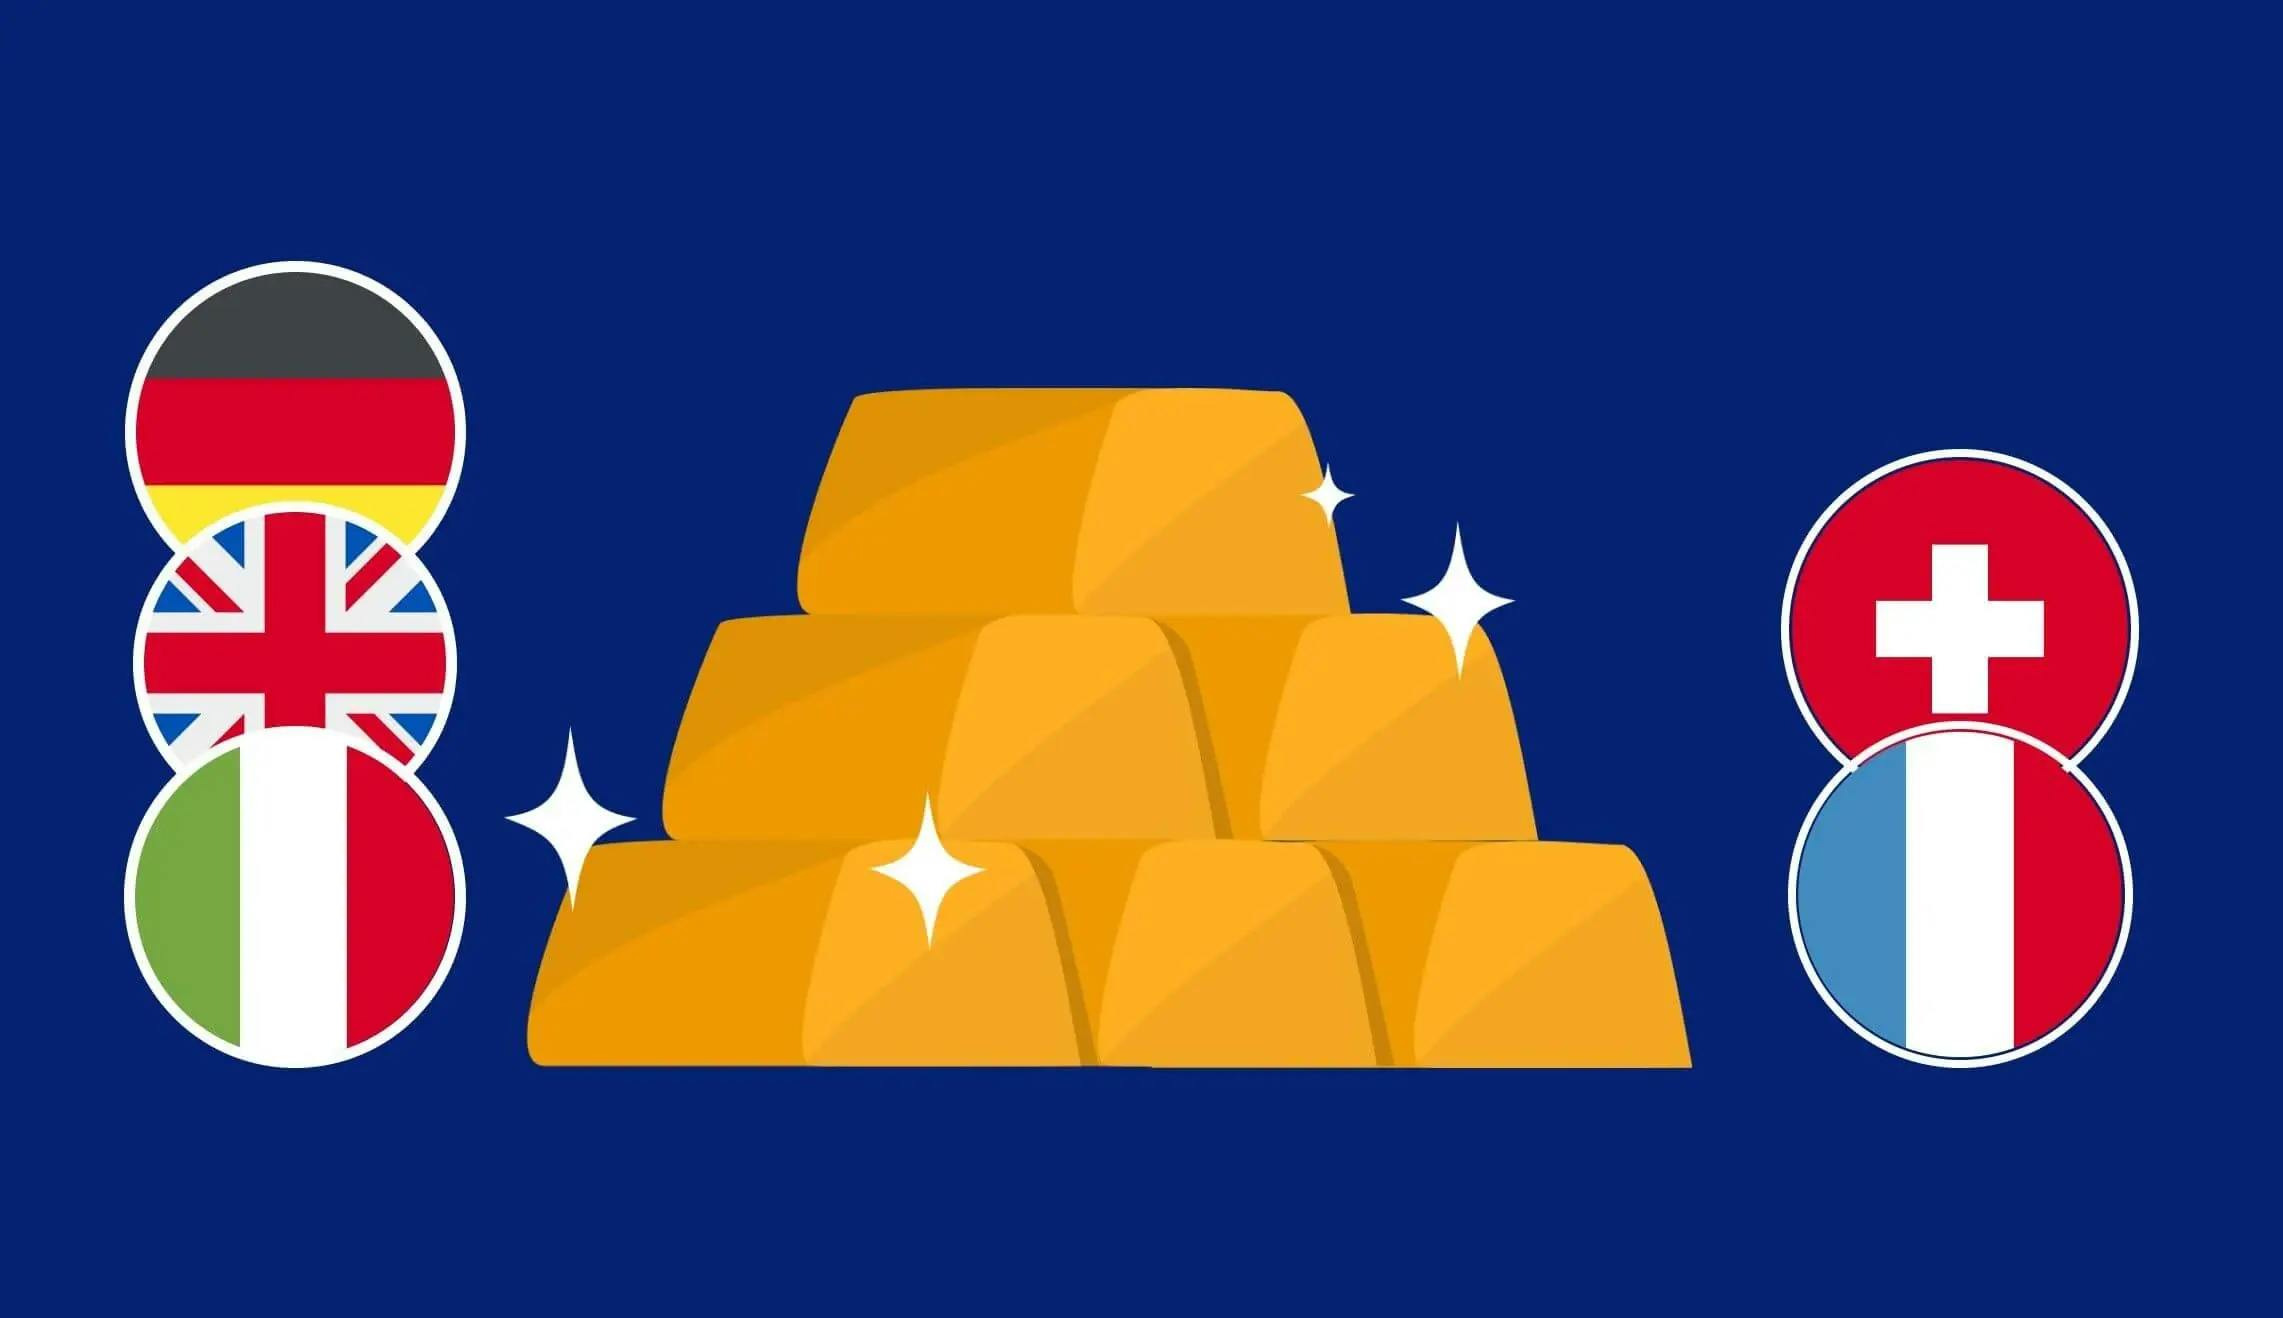 Bandiere italiane, svizzere, tedesche, britanniche e francesi con una pila di lingotti d'oro luccicante